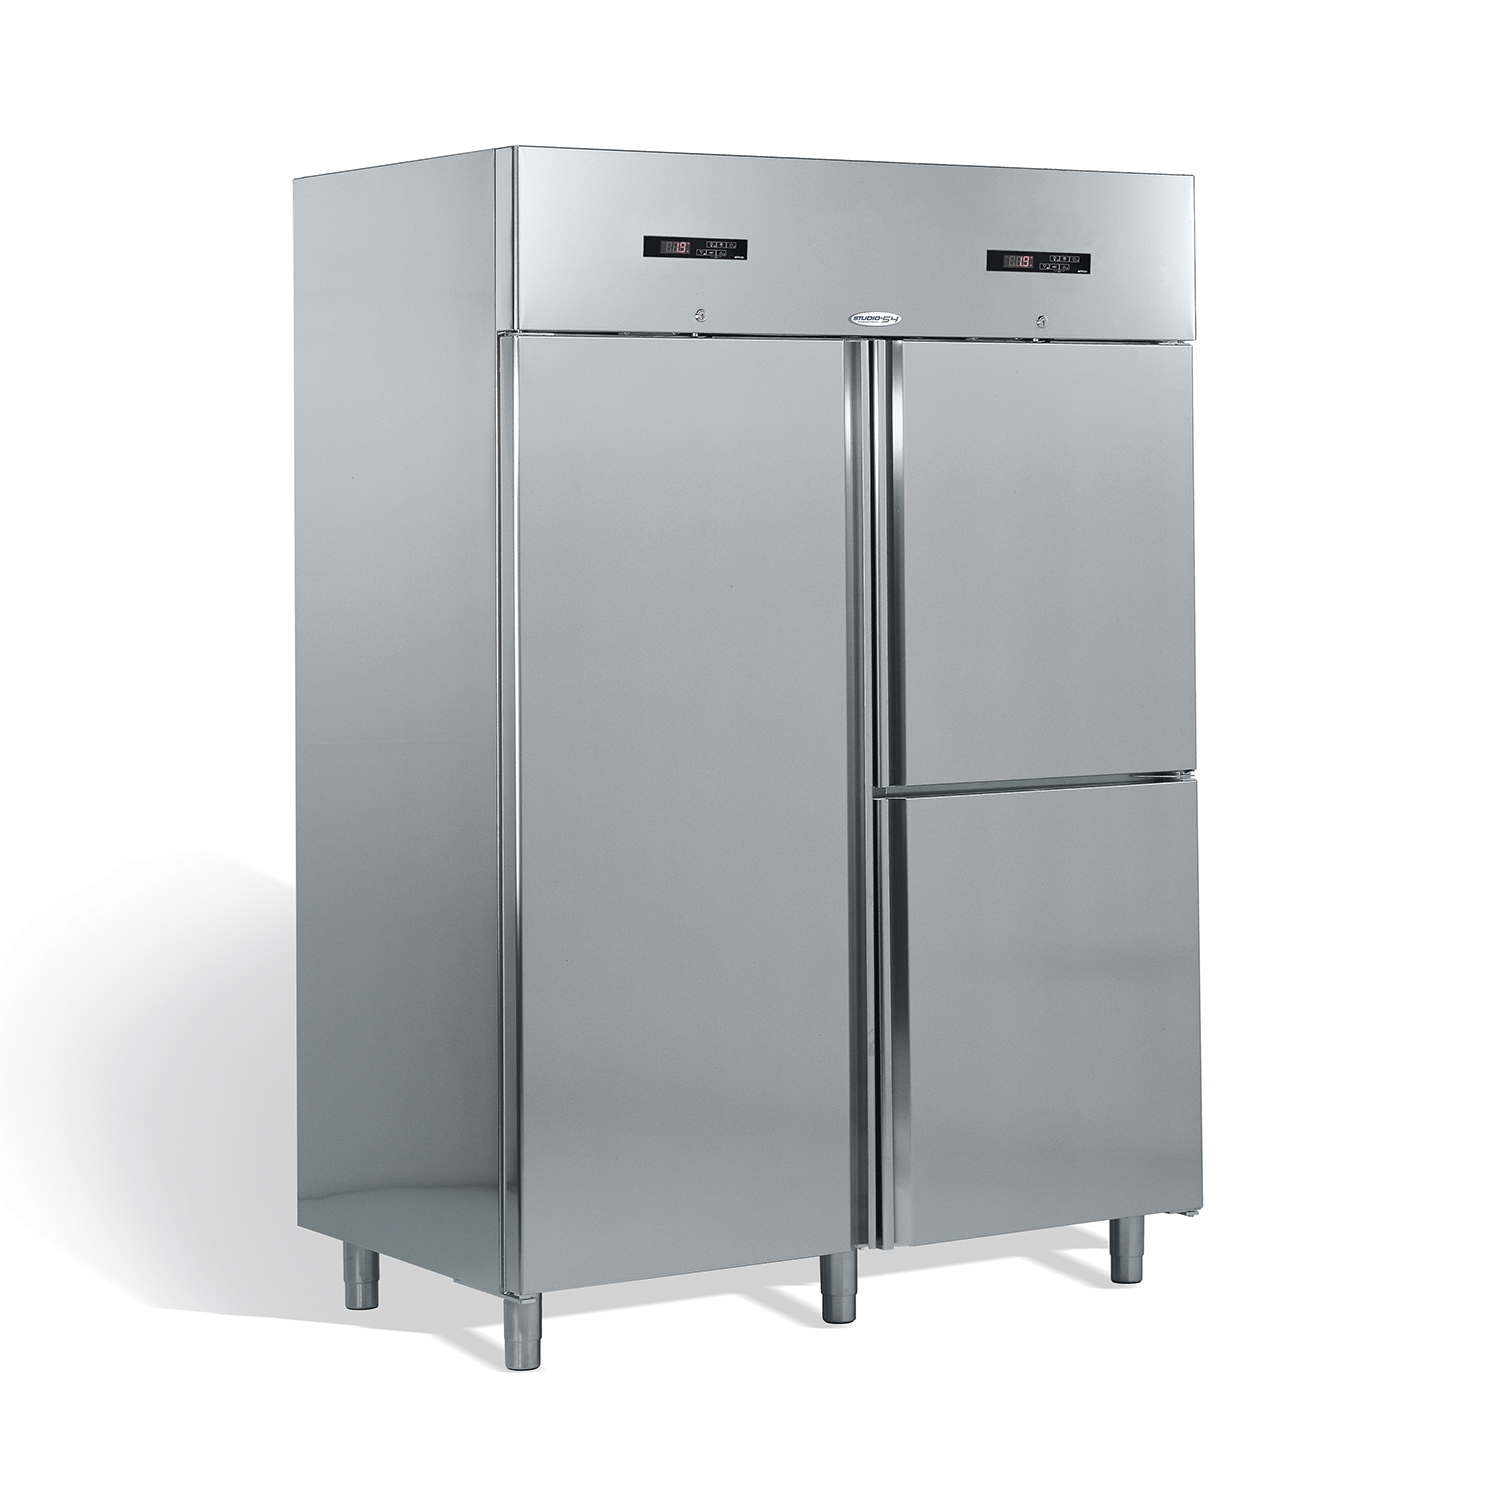 Gastro-Kombi-Kühlschrank dreitürig mit zwei Temperaturzonen OASIS TOP LINE 1400 Liter